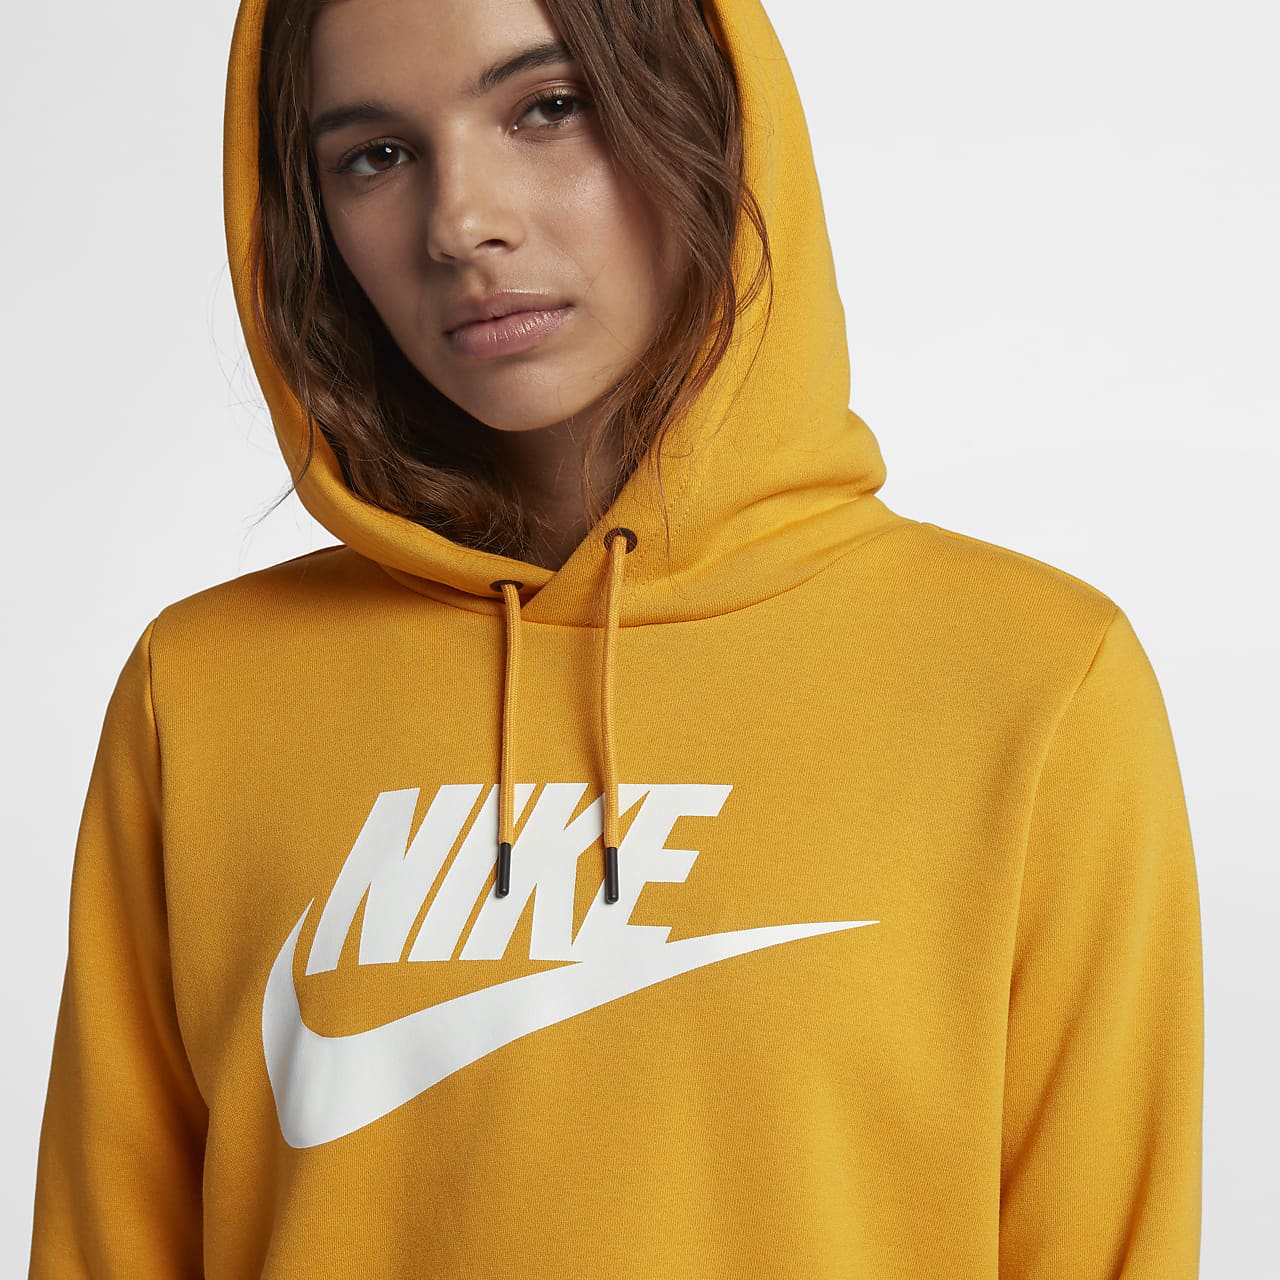 nike yellow hoodie women's